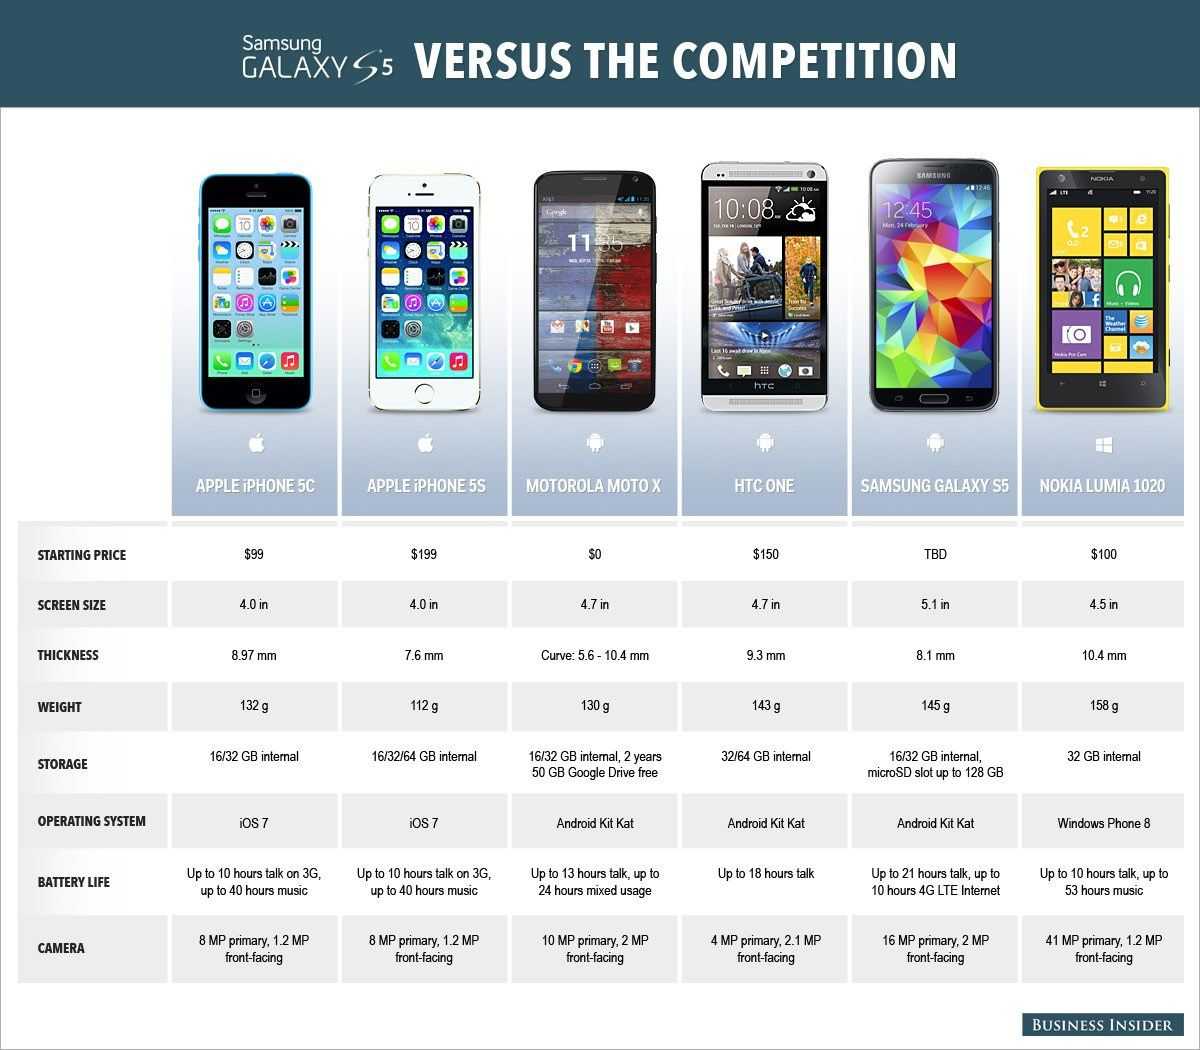 Samsun vs iphone. «самсунг» или «айфон», что лучше выбрать, что и в чем лучше?